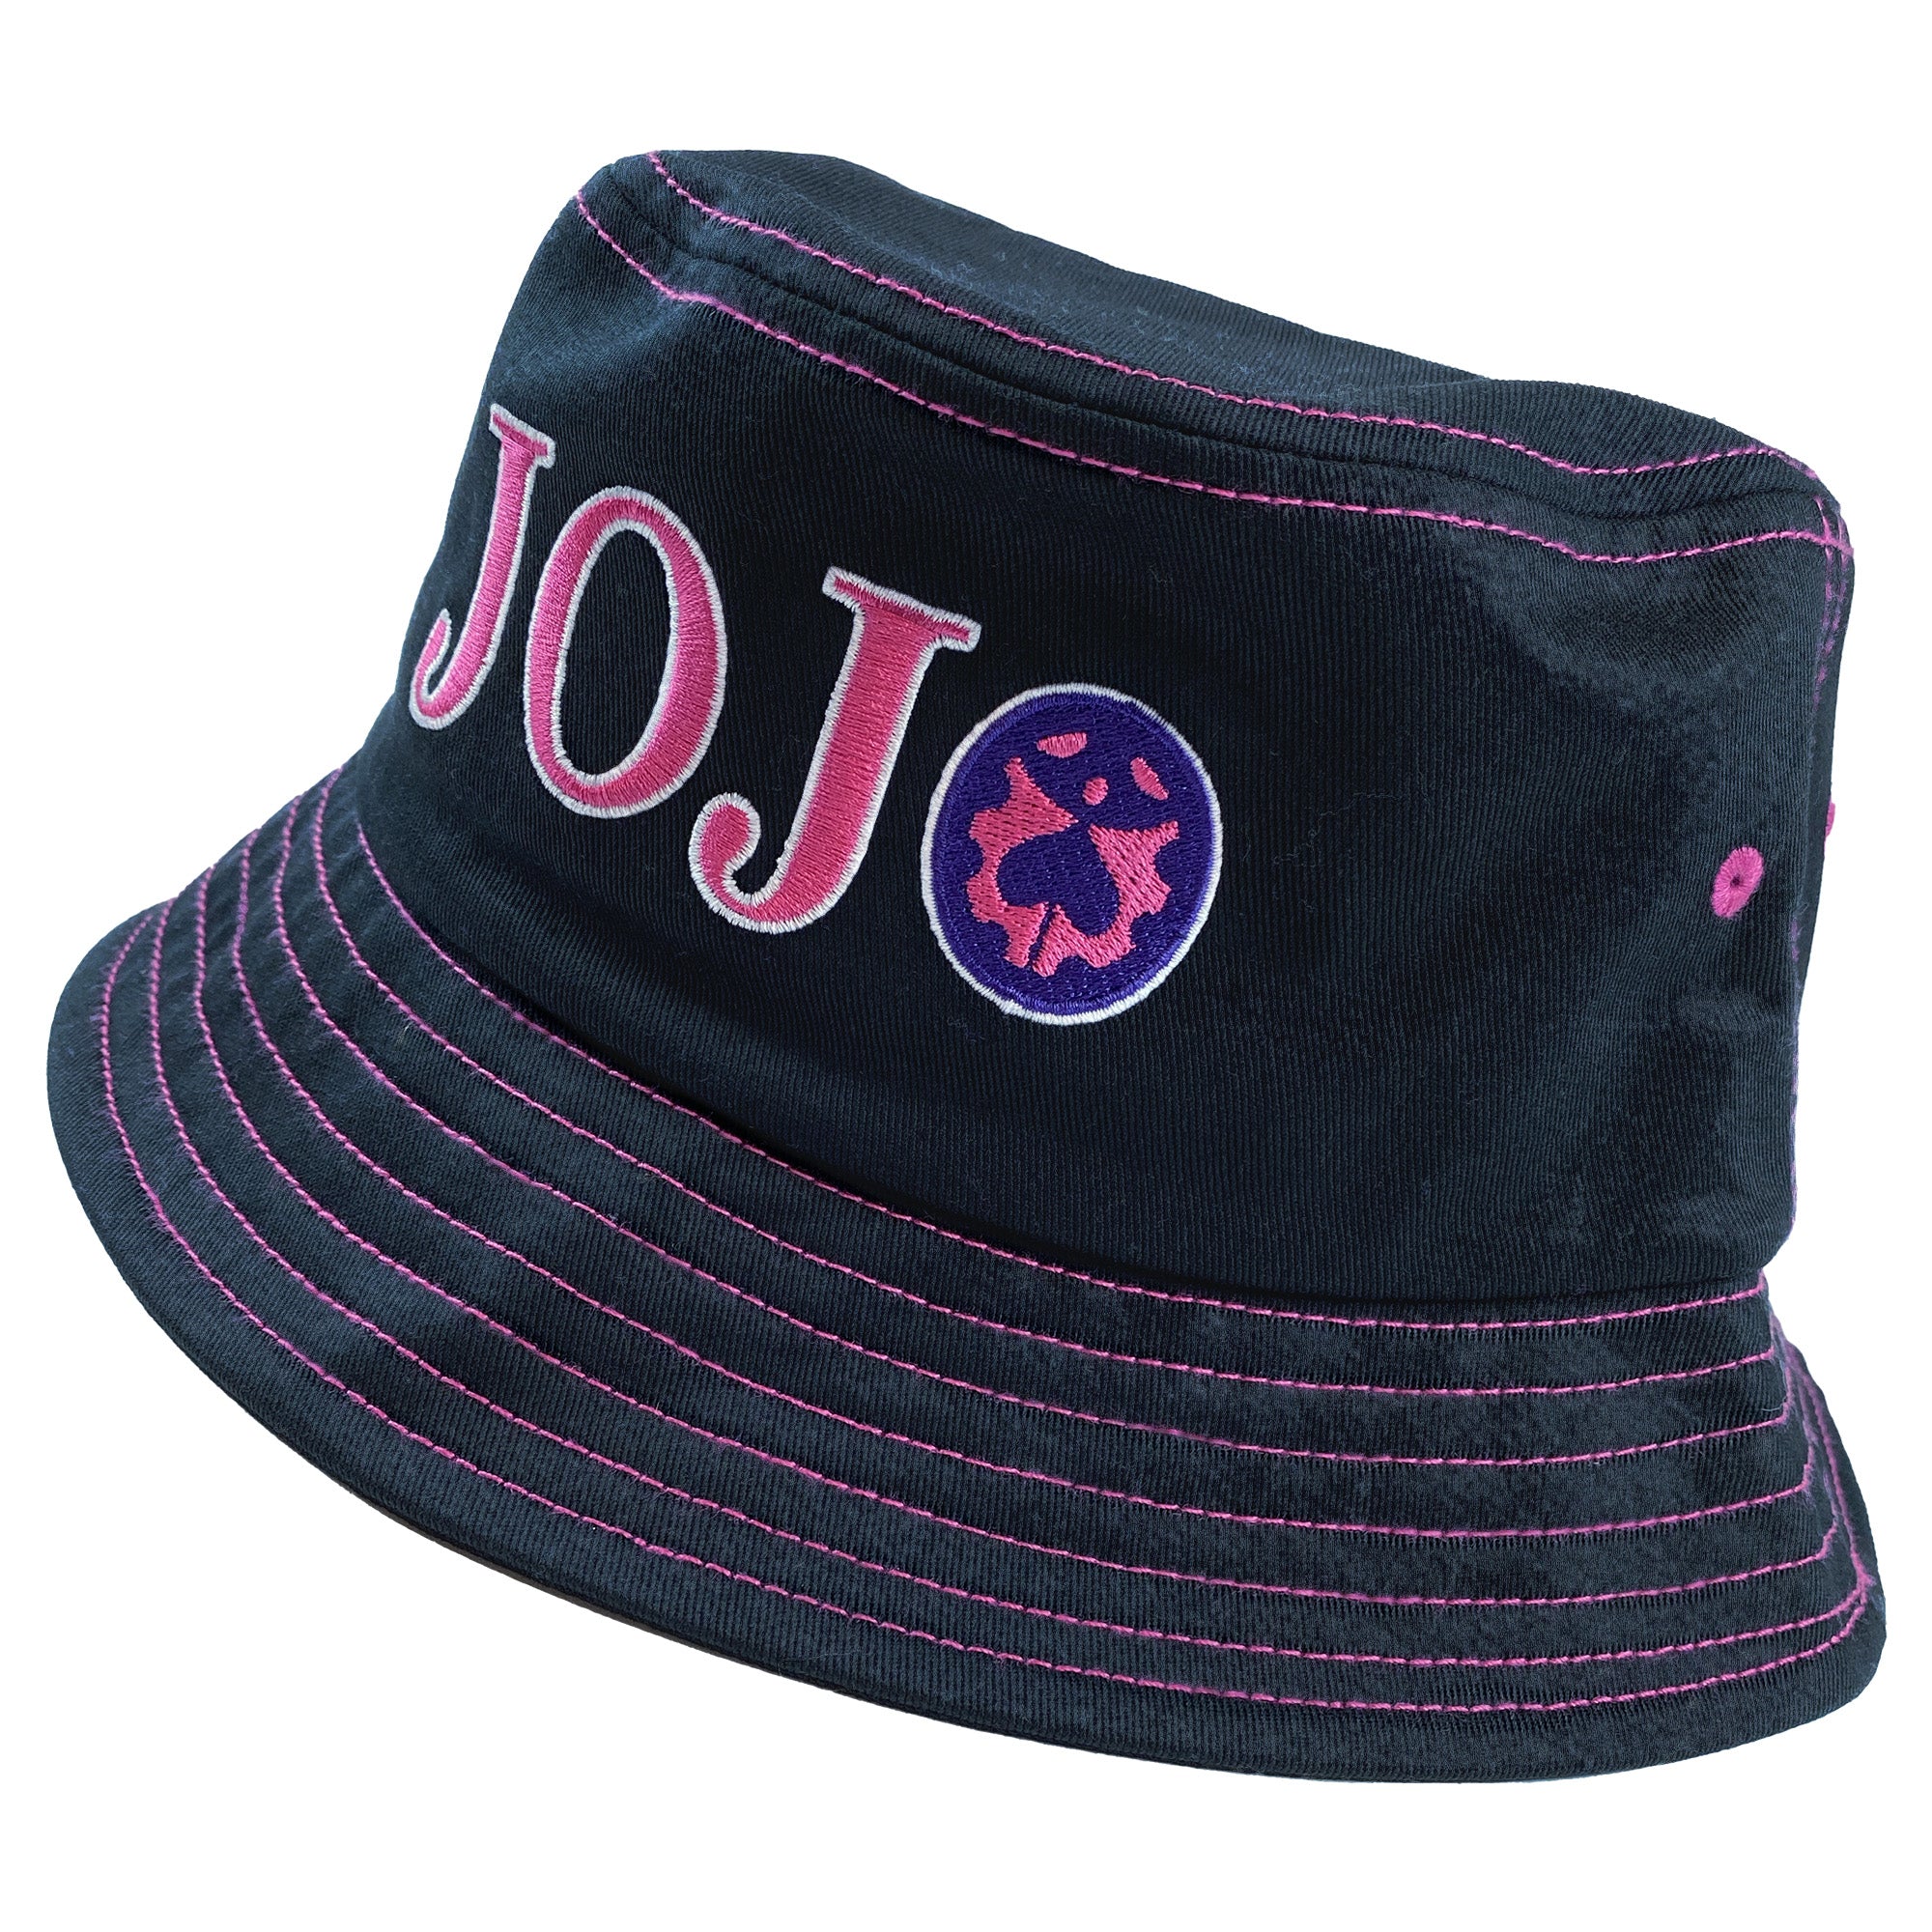 JoJo's Bizarre Adventure - Logo Bucket Hat image count 2